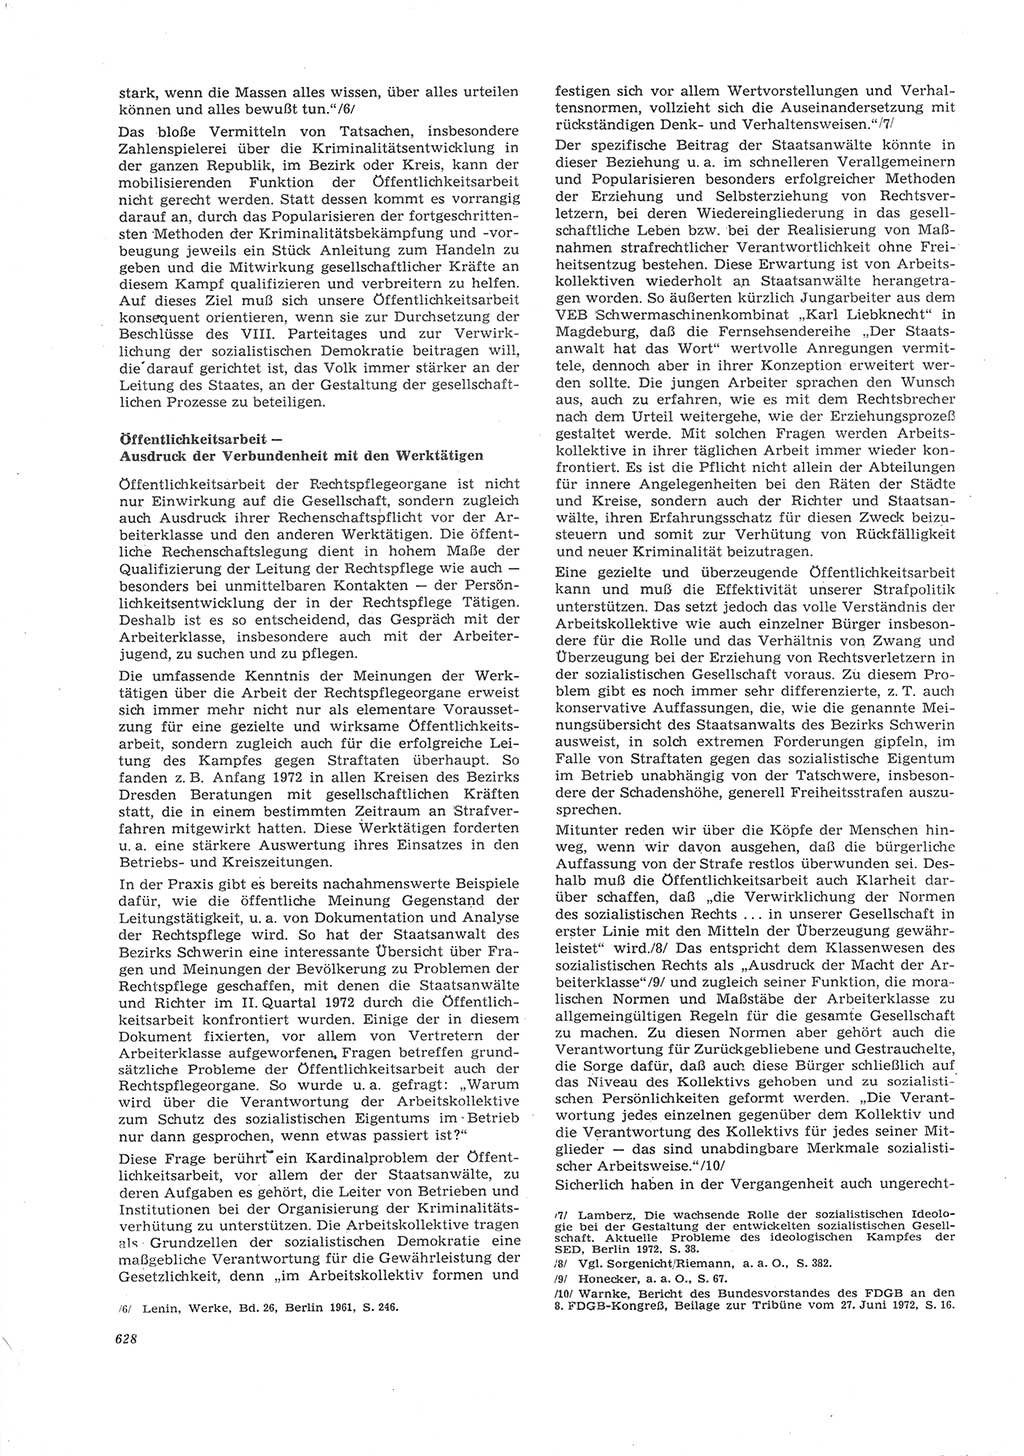 Neue Justiz (NJ), Zeitschrift für Recht und Rechtswissenschaft [Deutsche Demokratische Republik (DDR)], 26. Jahrgang 1972, Seite 628 (NJ DDR 1972, S. 628)